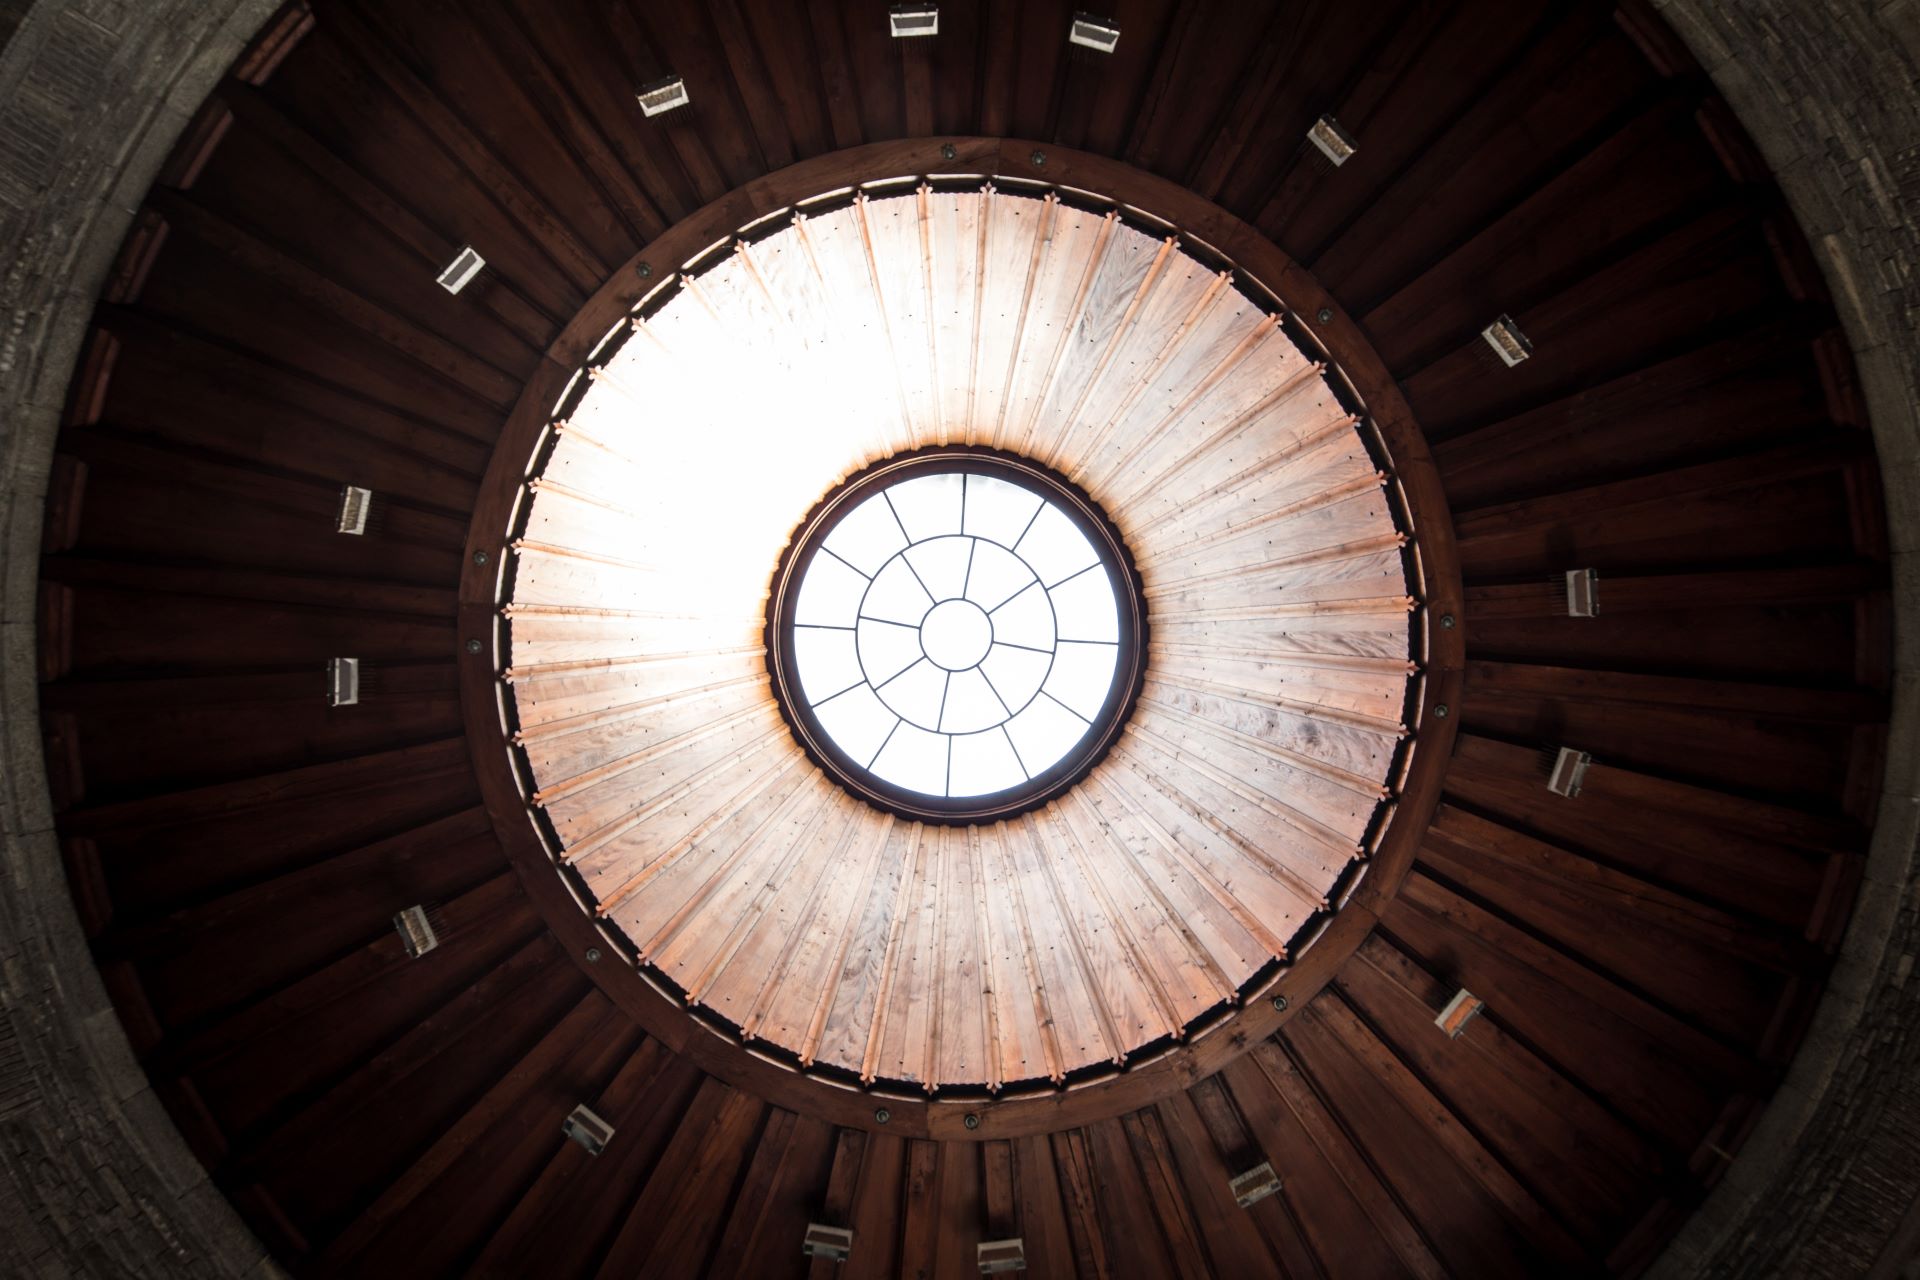 Gros plan architectural d'une lucarne circulaire au milieu d'un plafond en dôme en bois avec un design géométrique